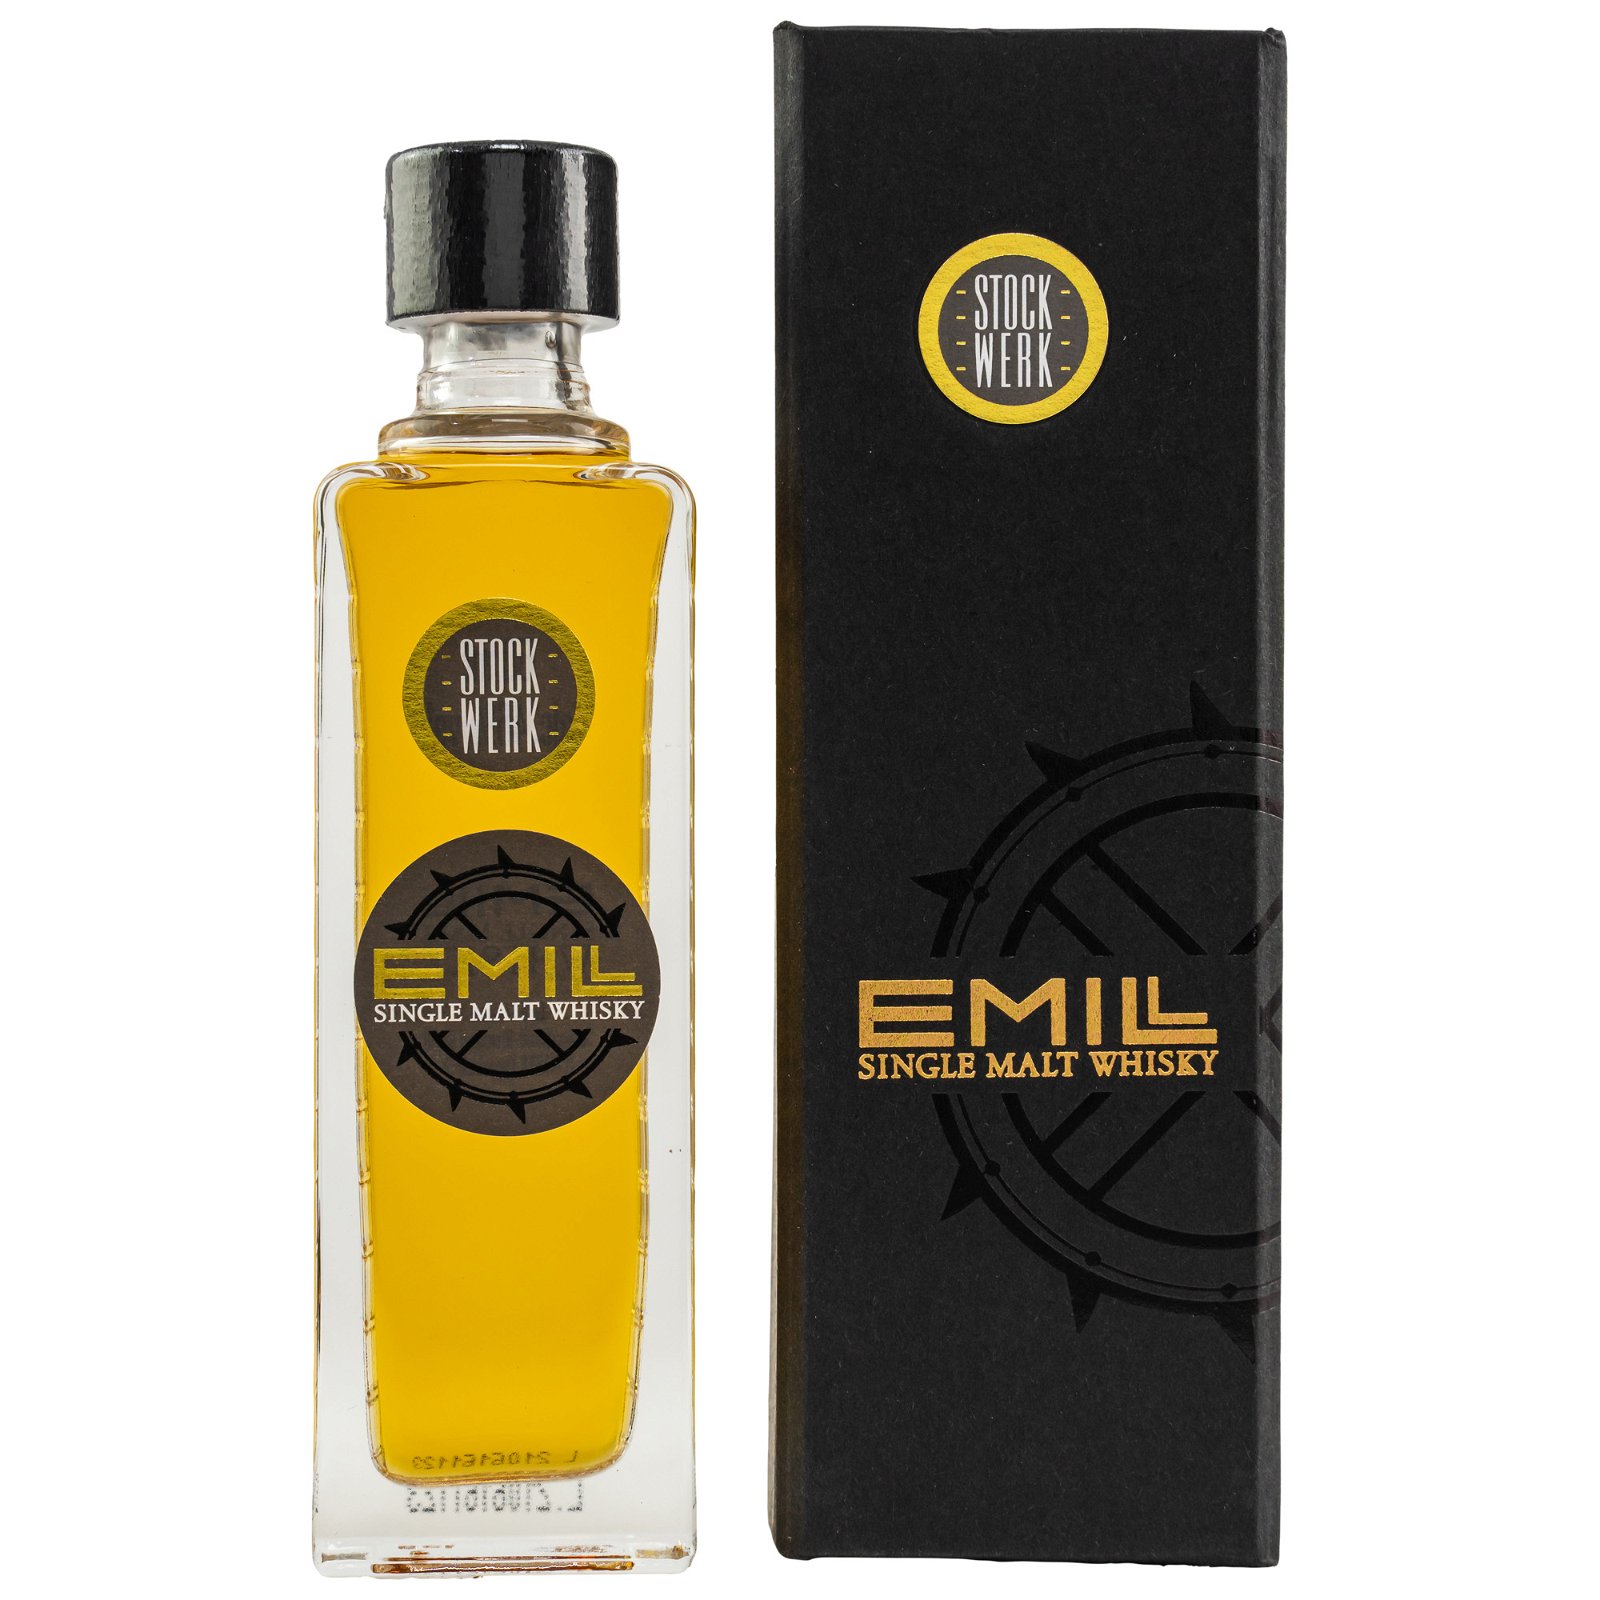 EMILL Stockwerk Single Malt Whisky (Miniatur)